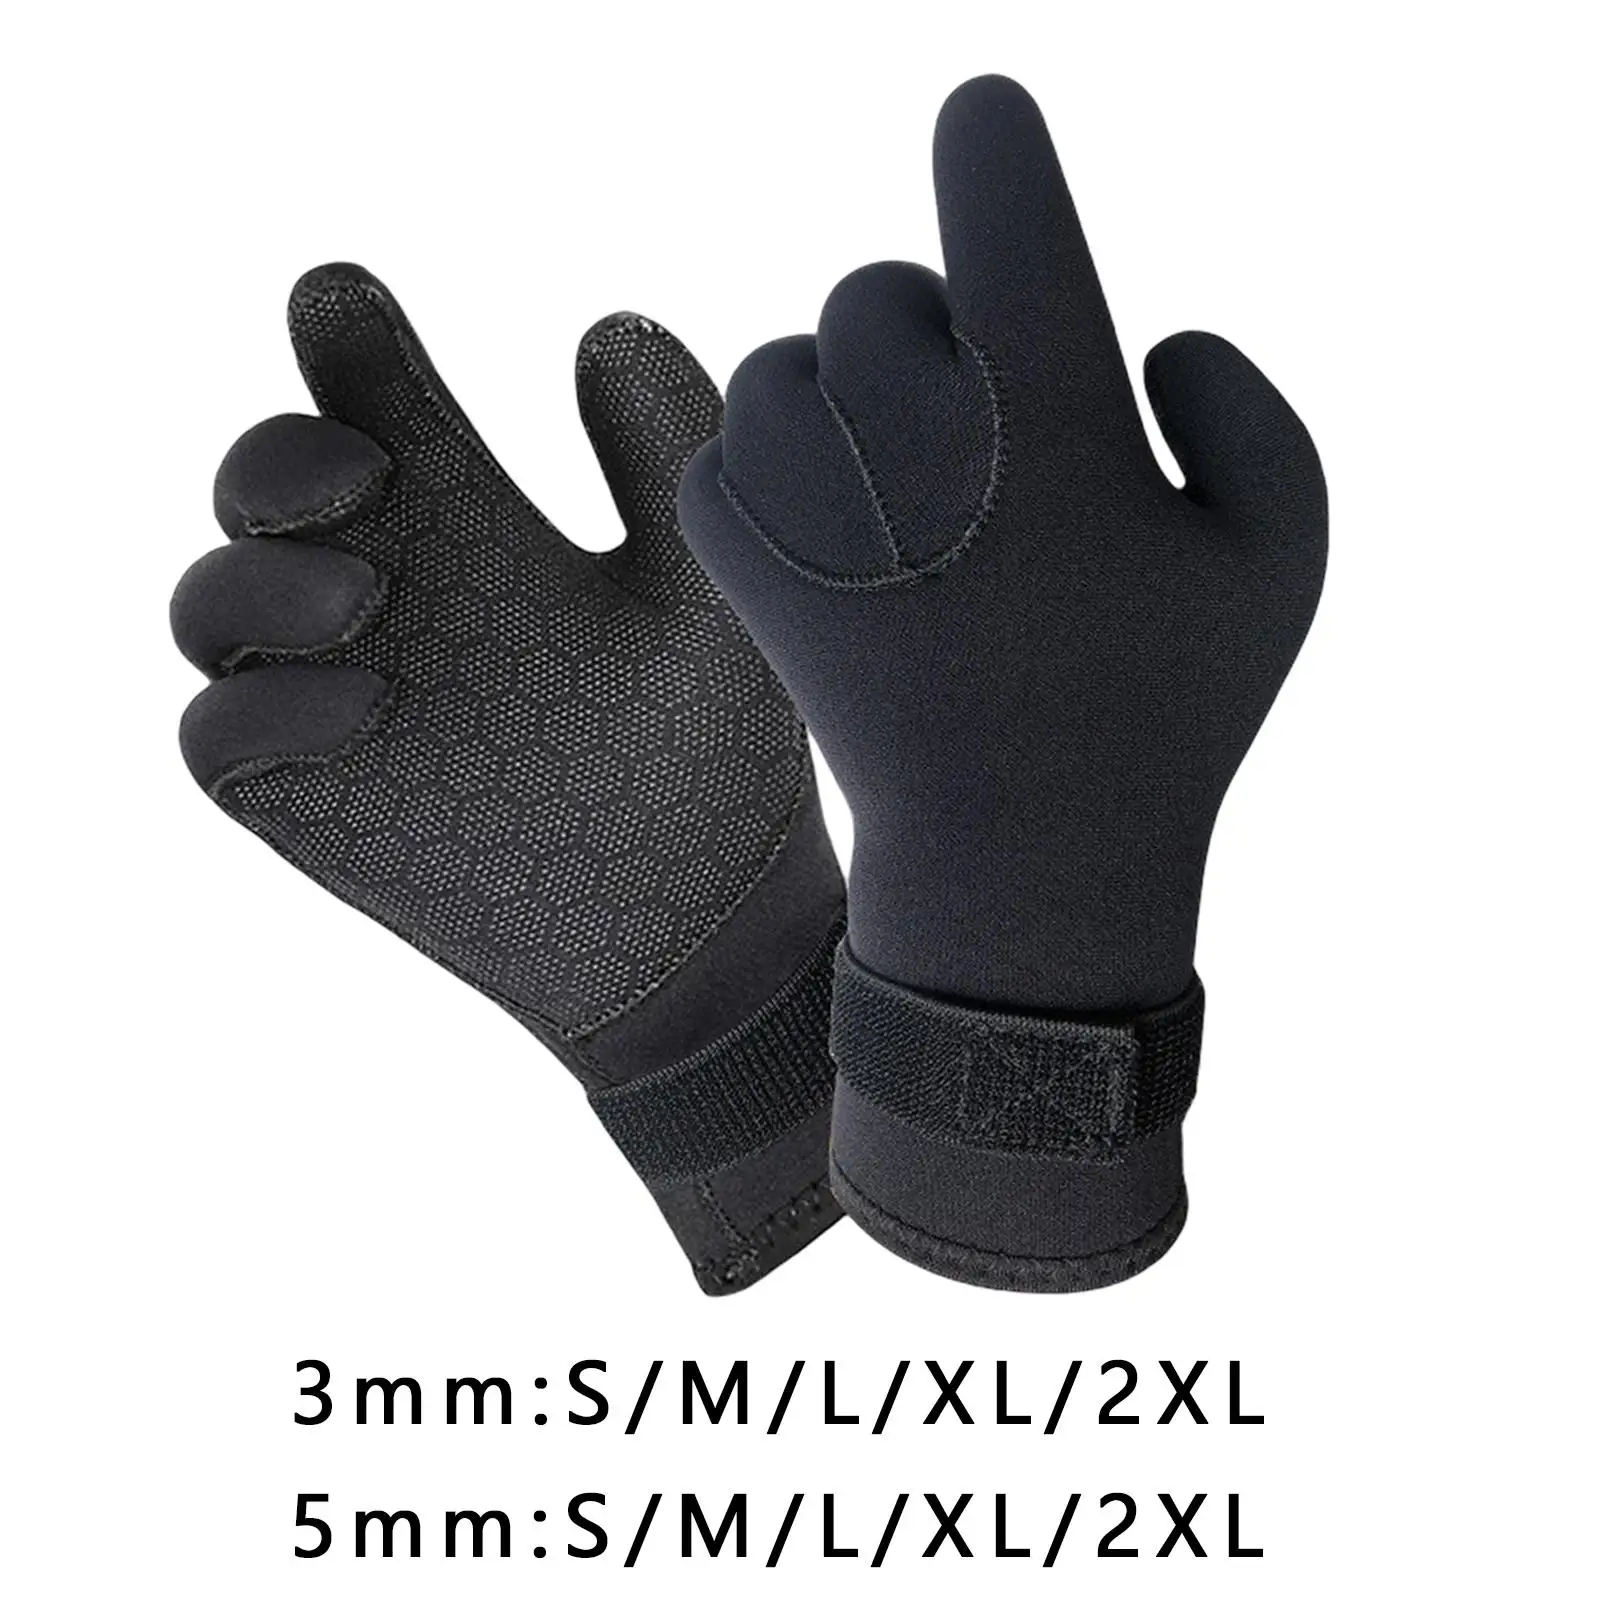 Neoprene Scuba Diving Gloves Warm Wetsuit Winter Gloves Anti Slip Warm Dive Gloves Five Finger Gloves for Rafting Kayaking